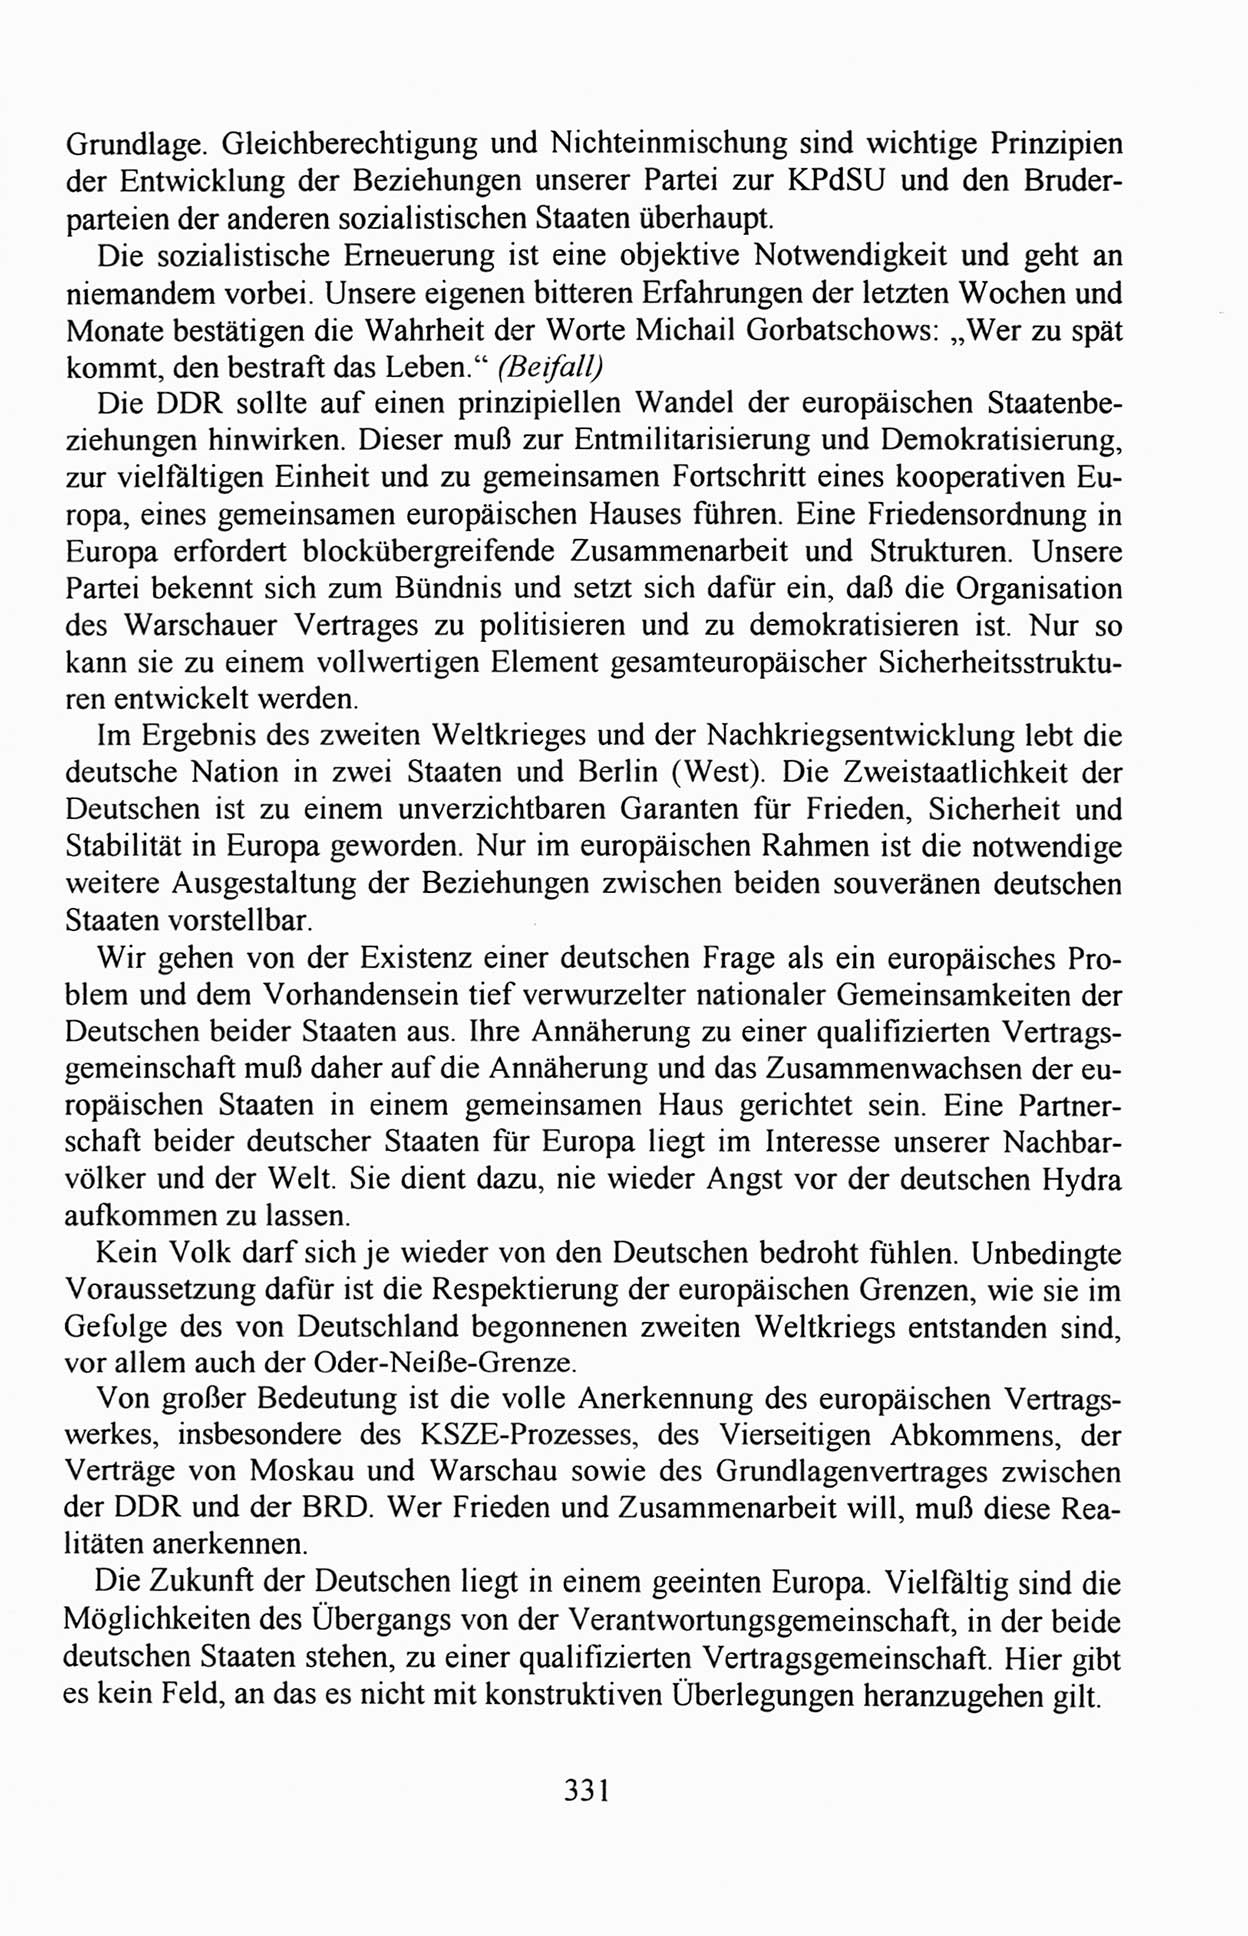 Außerordentlicher Parteitag der SED/PDS (Sozialistische Einheitspartei Deutschlands/Partei des Demokratischen Sozialismus) [Deutsche Demokratische Republik (DDR)], Protokoll der Beratungen am 8./9. und 16./17.12.1989 in Berlin 1989, Seite 331 (PT. SED/PDS DDR Prot. 1989, S. 331)